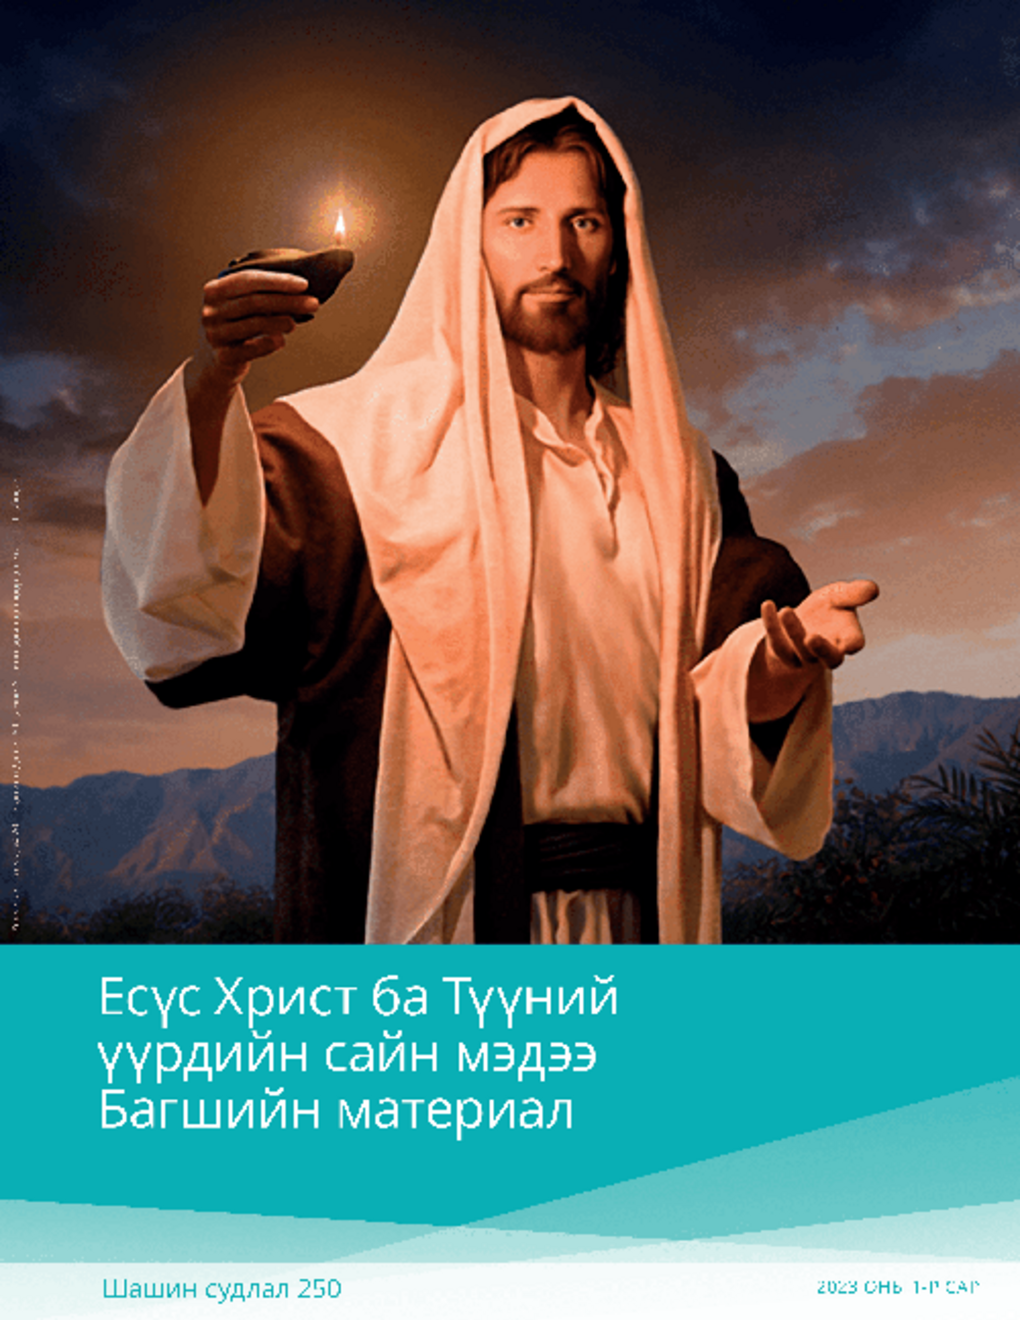 Есүс Христ ба Түүний үүрдийн сайн мэдээ Багшийн материал (Шашин судлал 250)